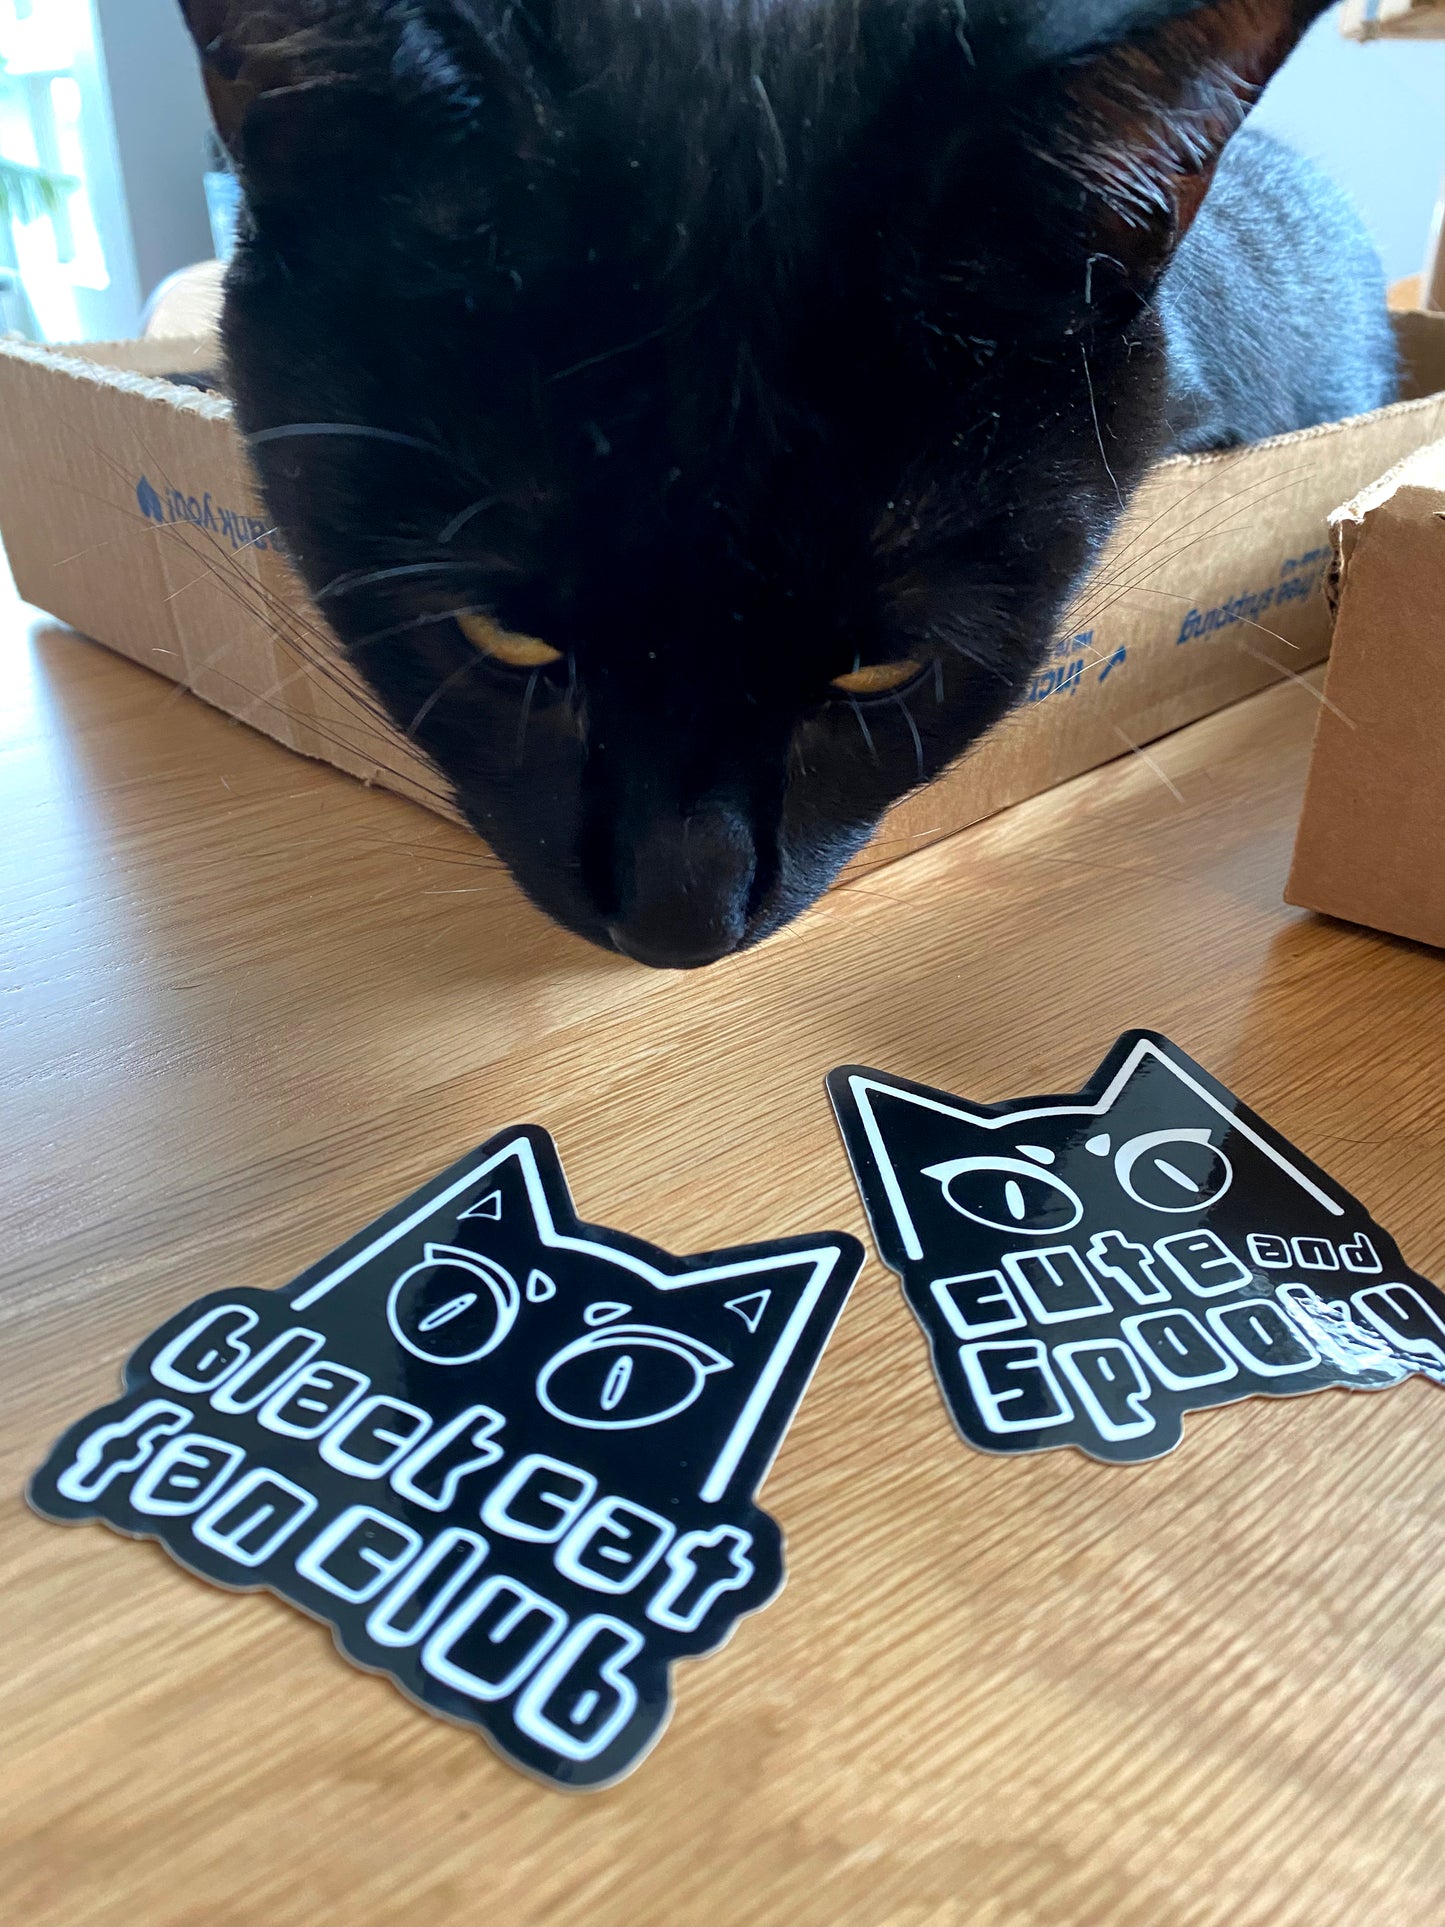 Black Cat Fan Club Vinyl Sticker